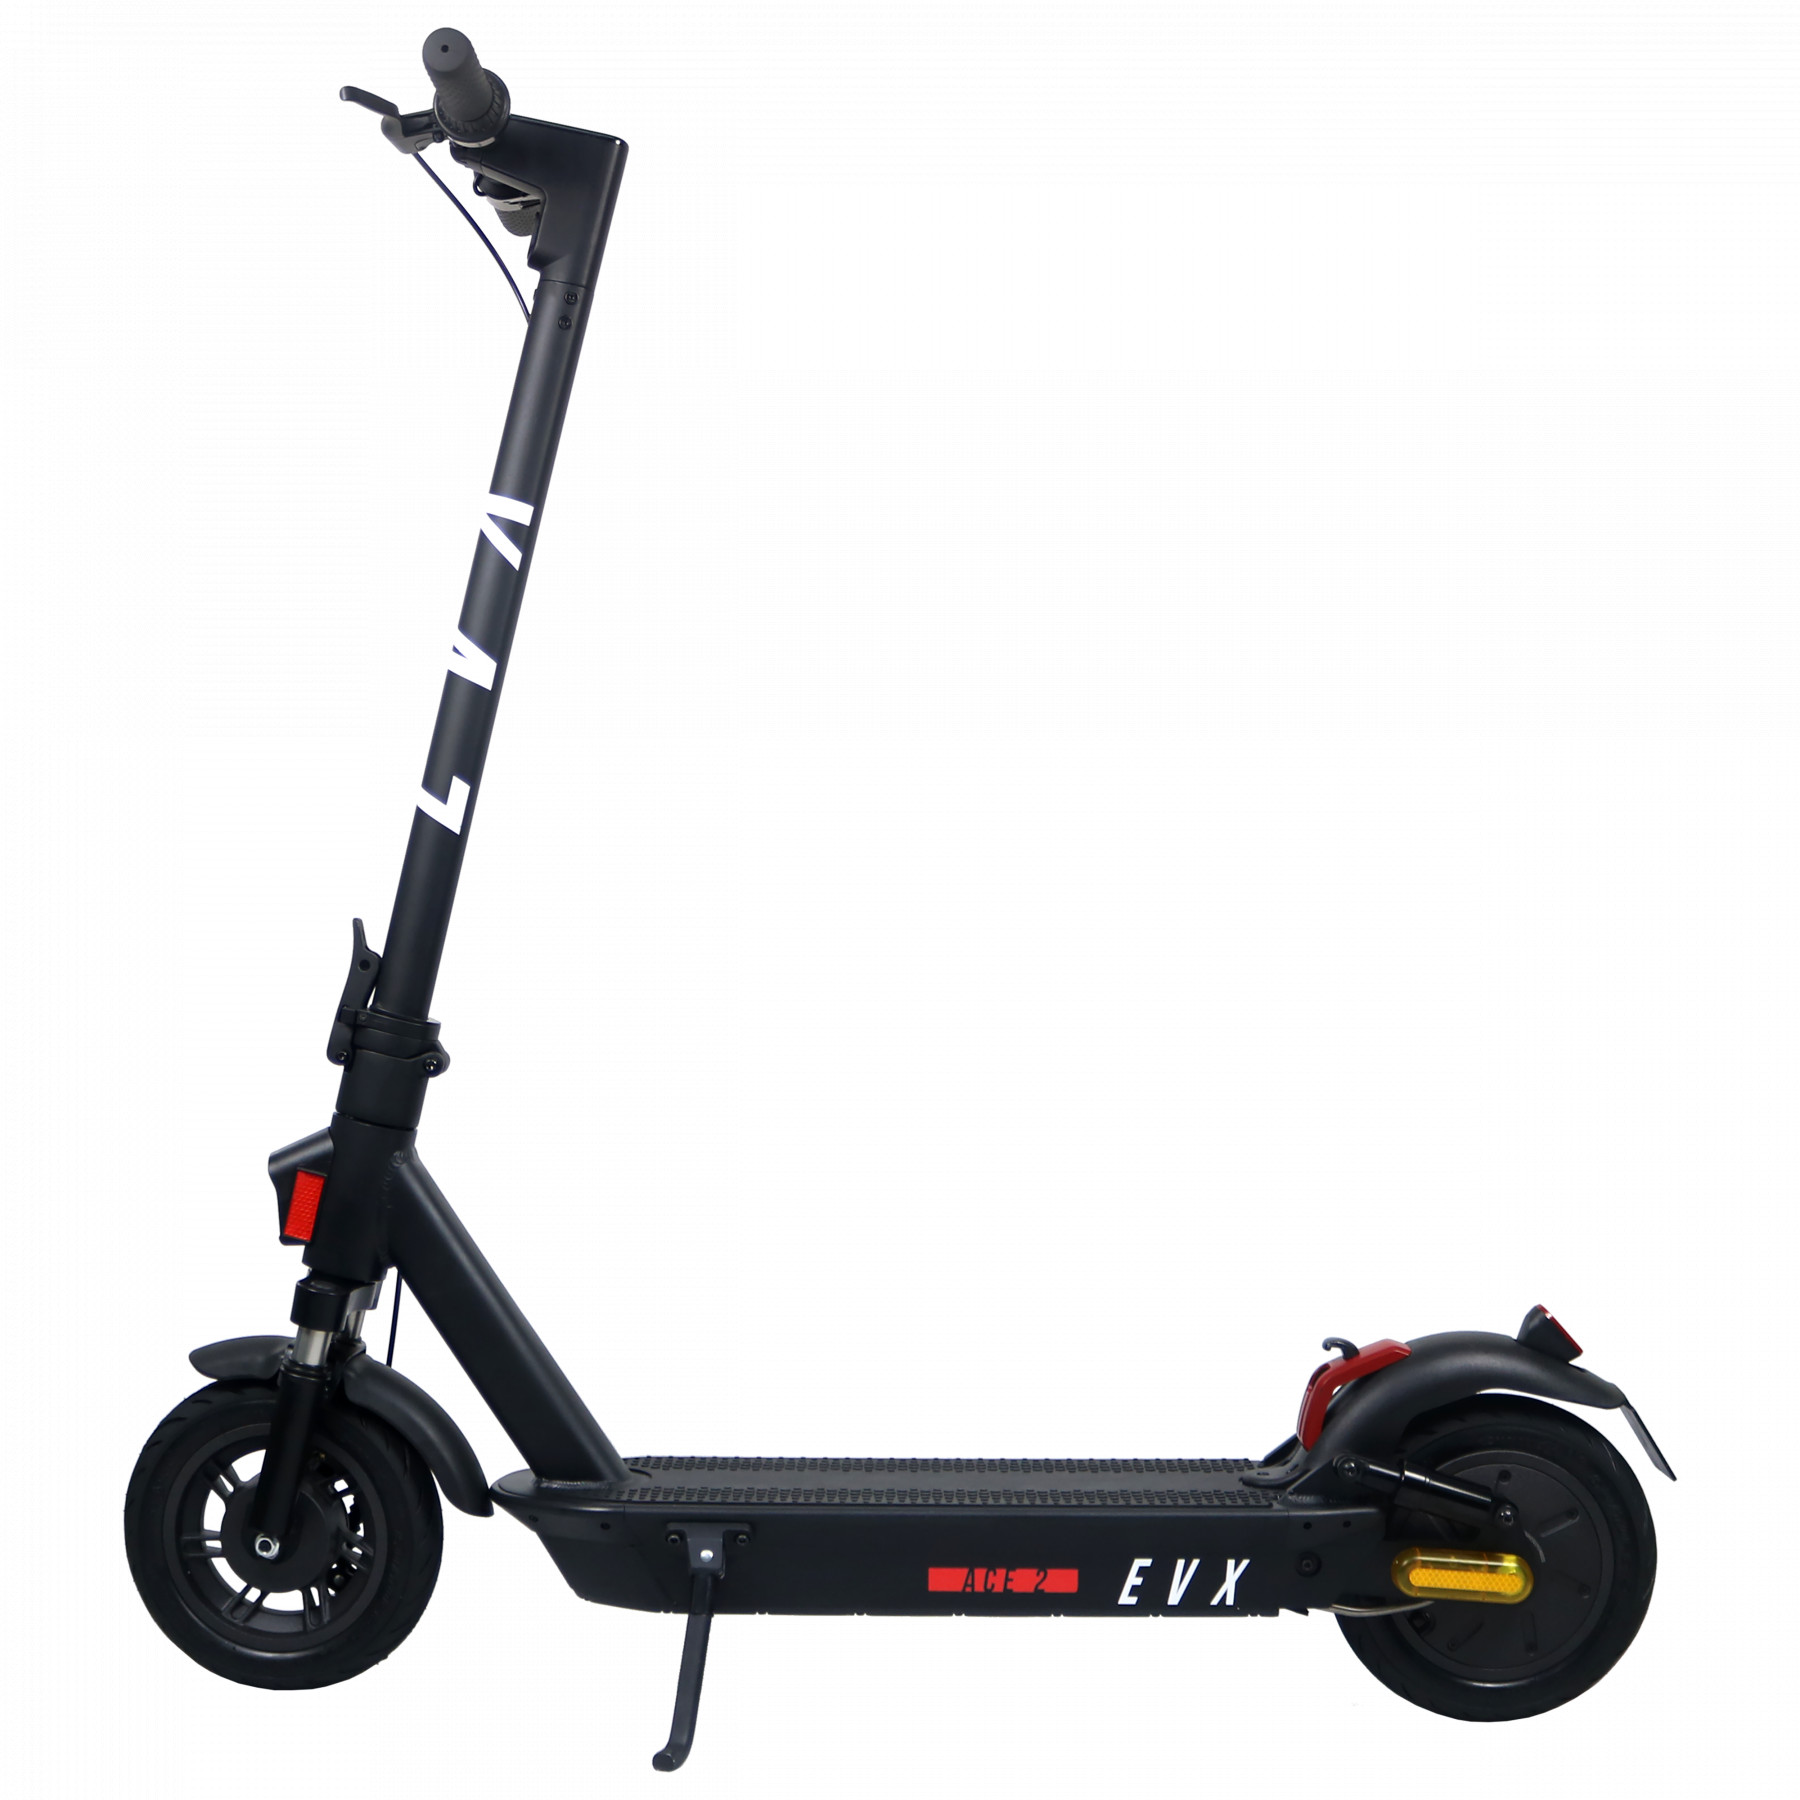 OUTLET ACE 2 e-scooter €350.00 | ALE -€349.00 - EVX Store